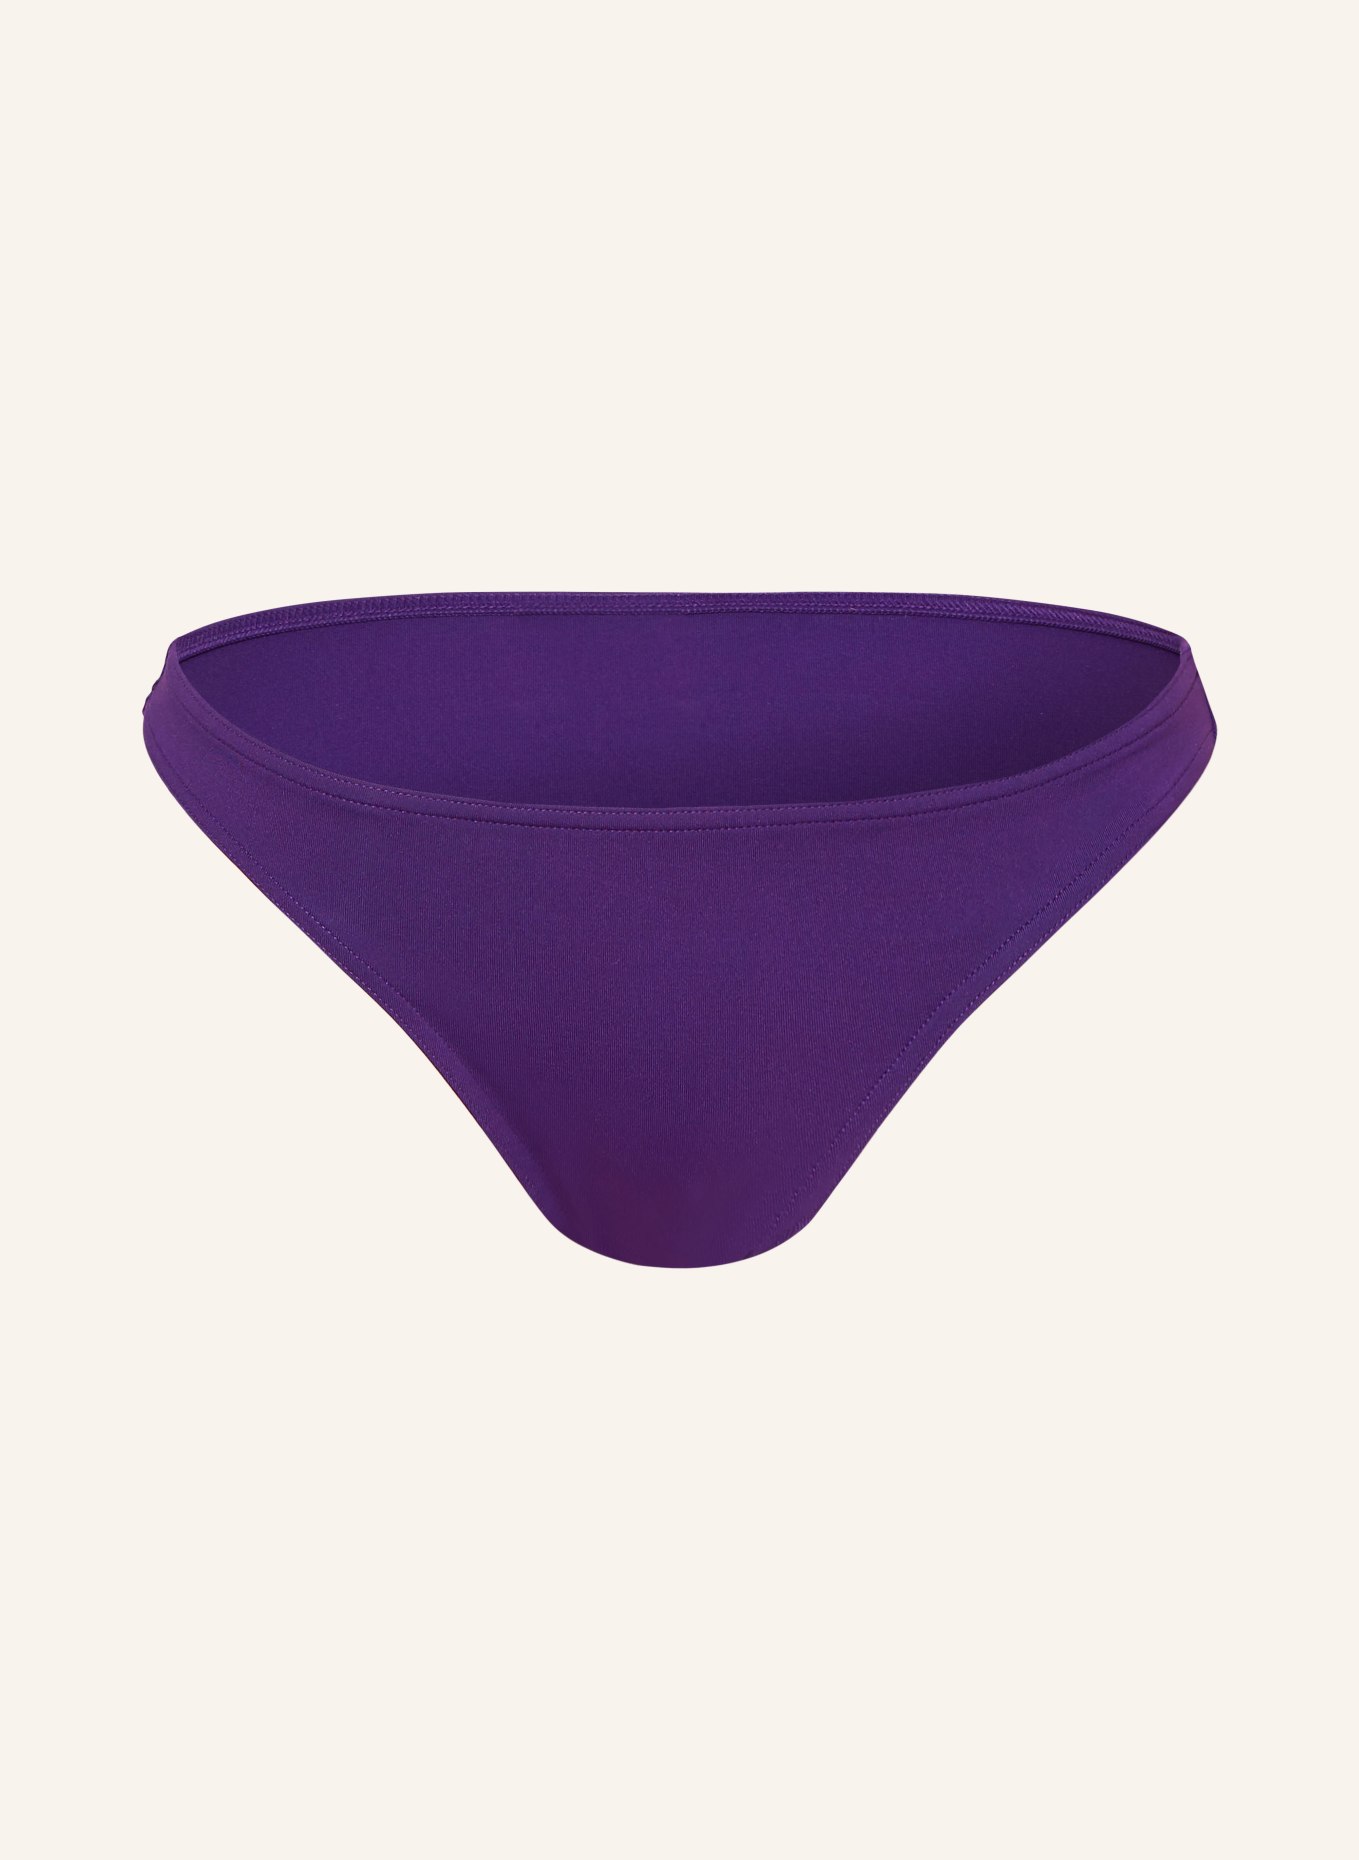 ERES Basic bikini bottoms FRIPON, Color: PURPLE (Image 1)